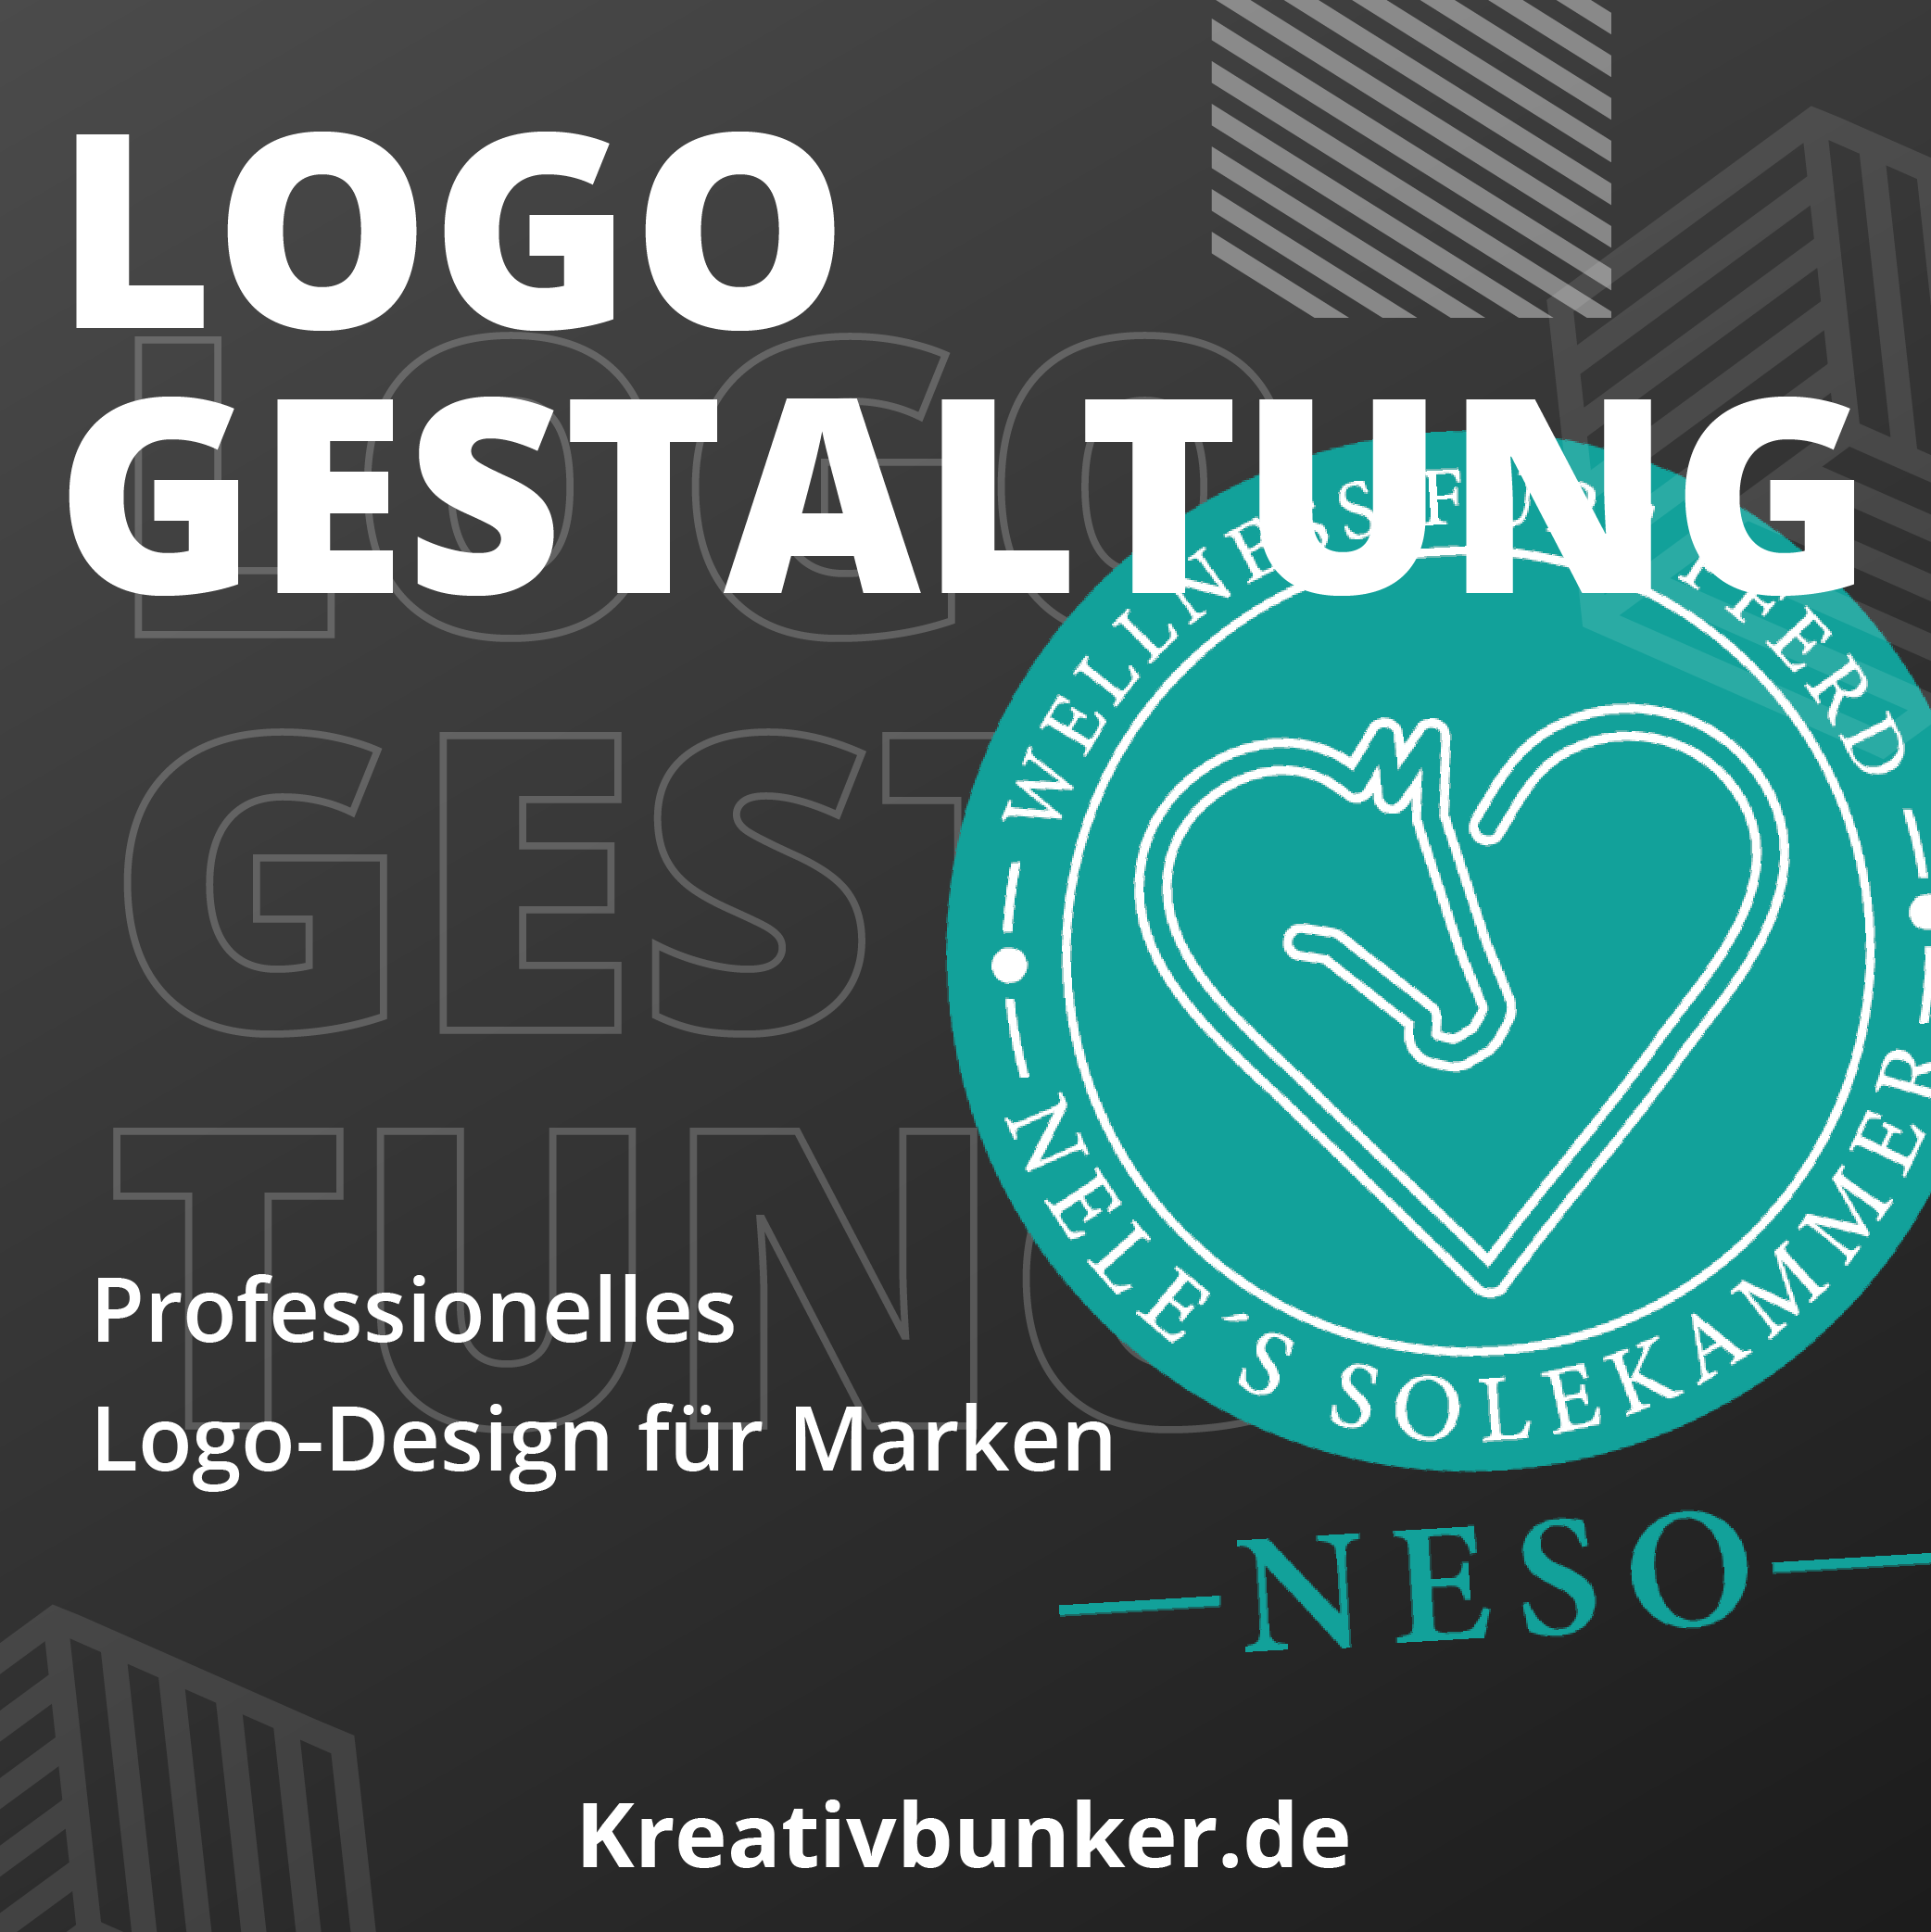 Kreativ Bunker - Logo Gestaltung: Schaffen Sie ein unverwechselbares Markenemblem. Unsere Experten entwerfen einprägsame Logos für bleibenden Eindruck.